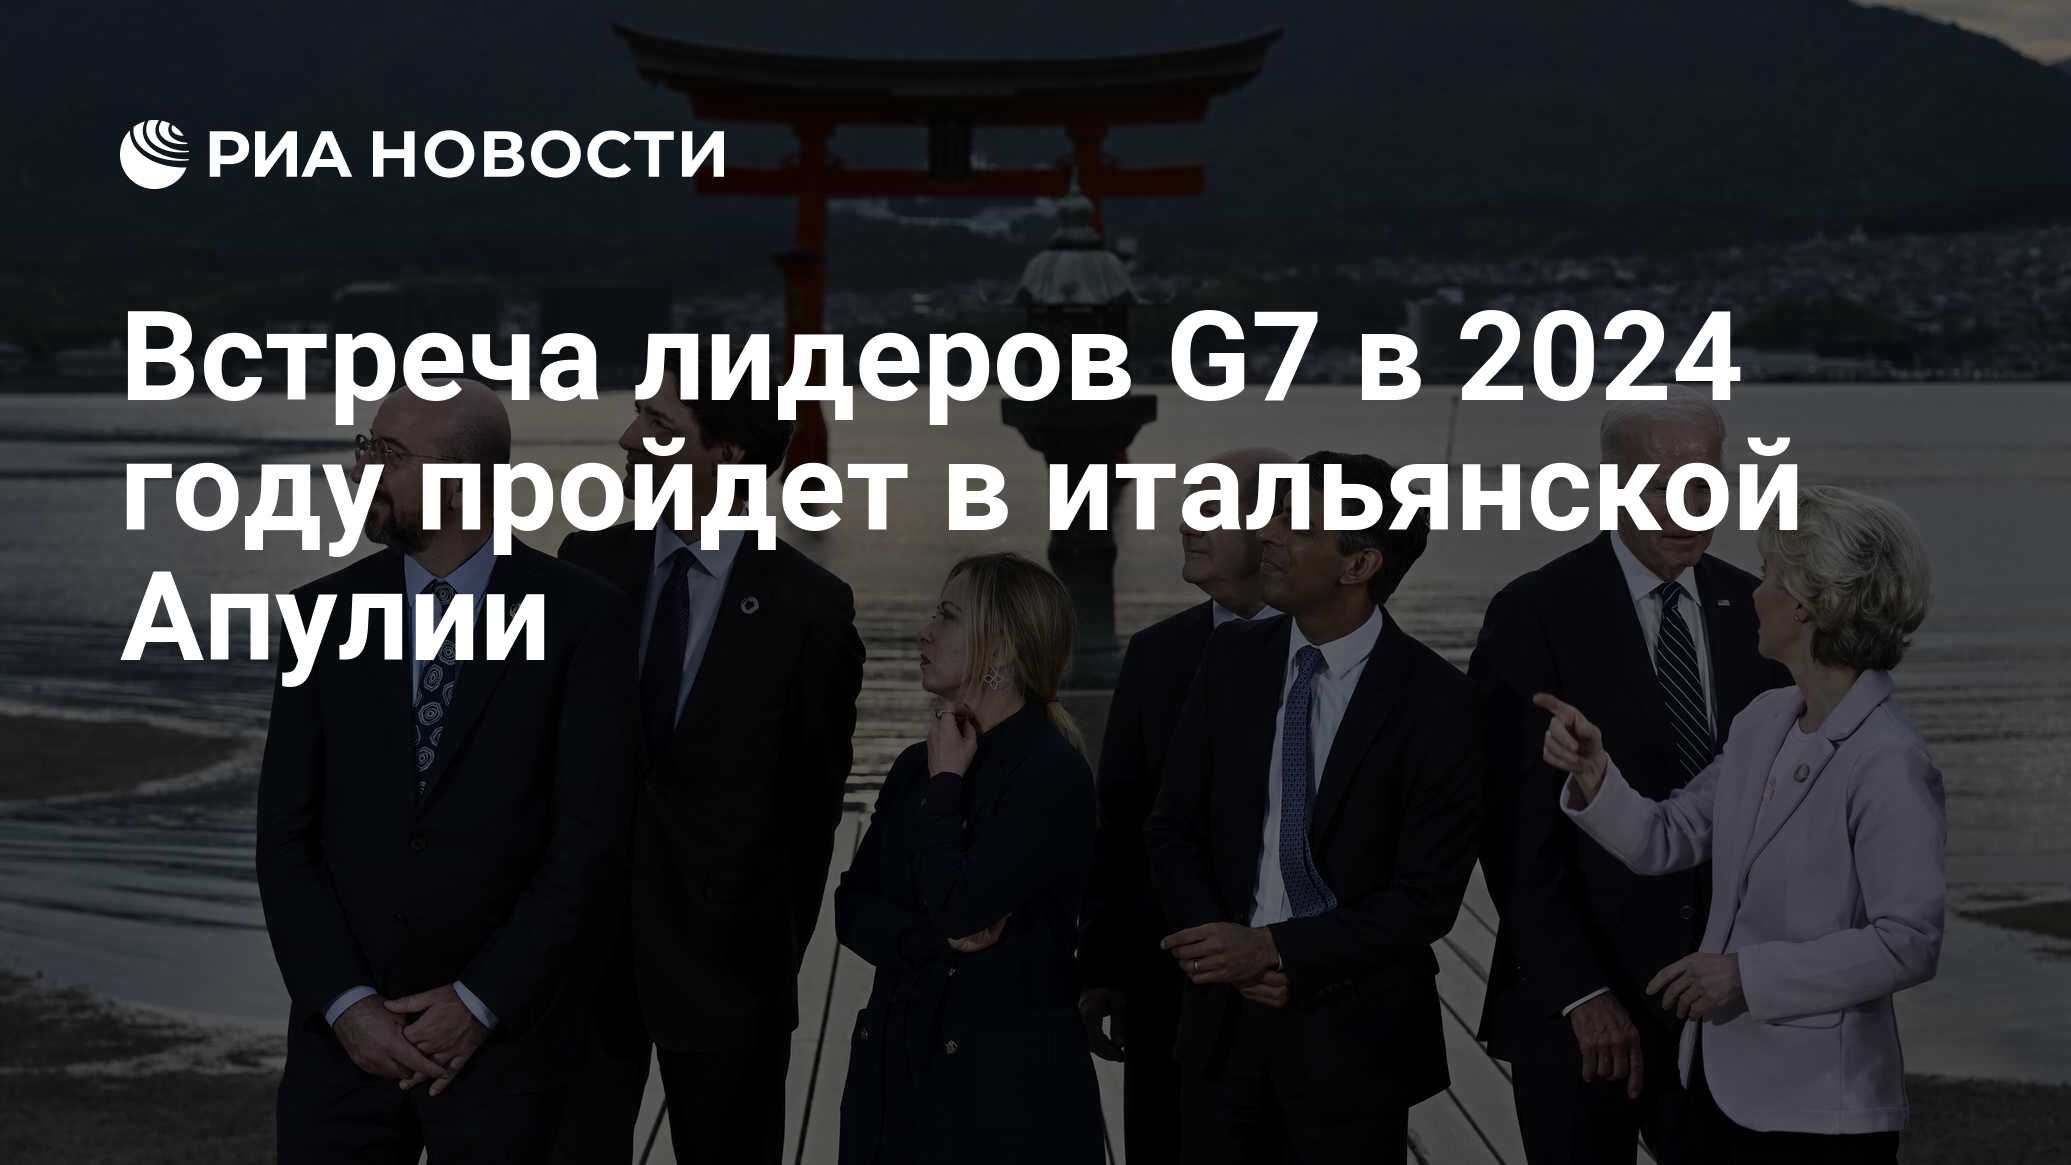 Встреча лидеров G7 в 2024 году пройдет в итальянской Апулии РИА